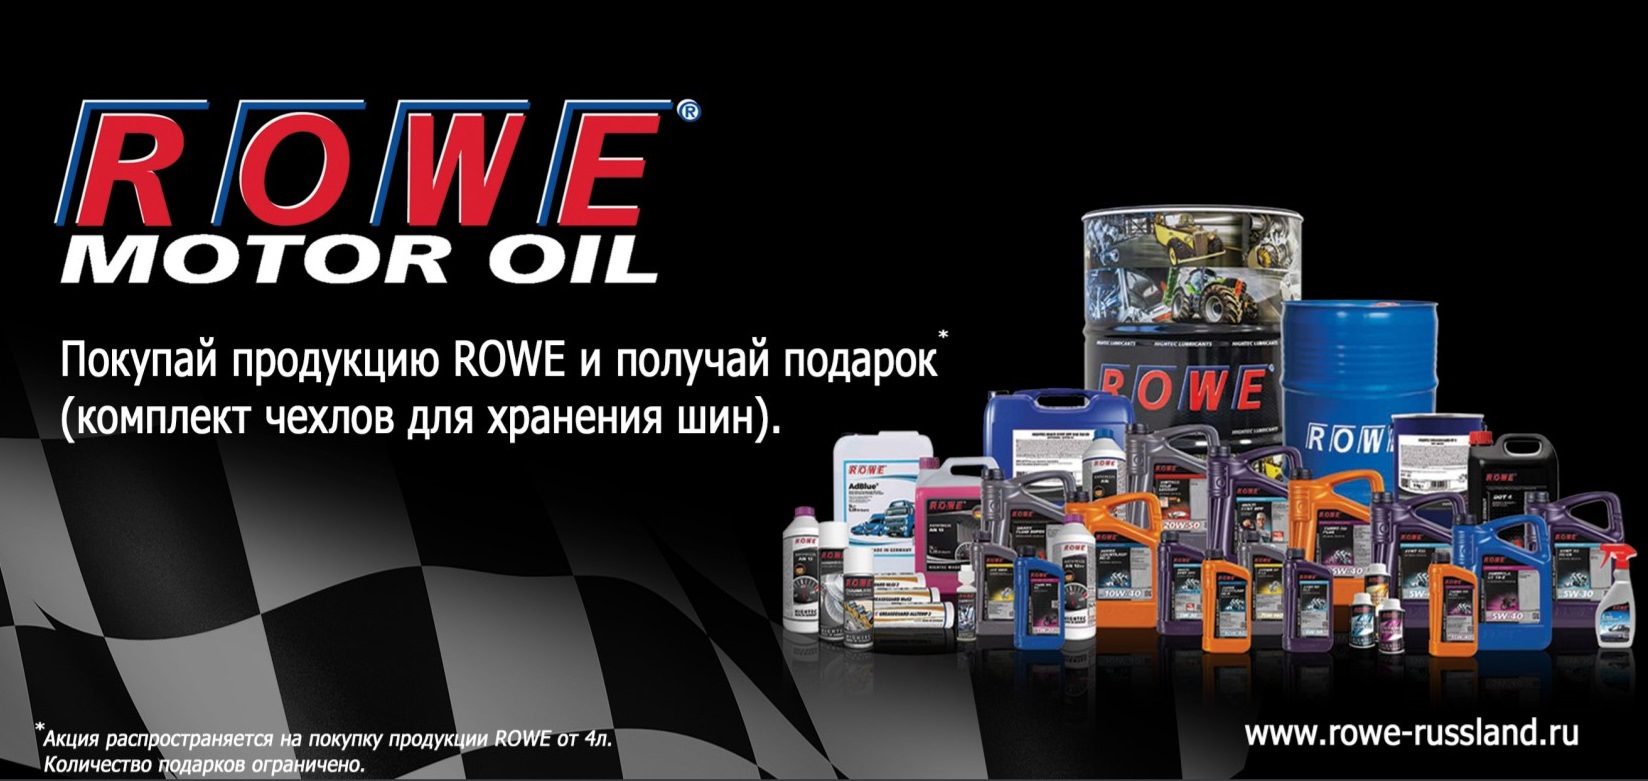 Купить масло энгельс. Моторное масло Rowe продукция. Моторное масло Rowe реклама. Rowe масло лого. Завод Rowe.